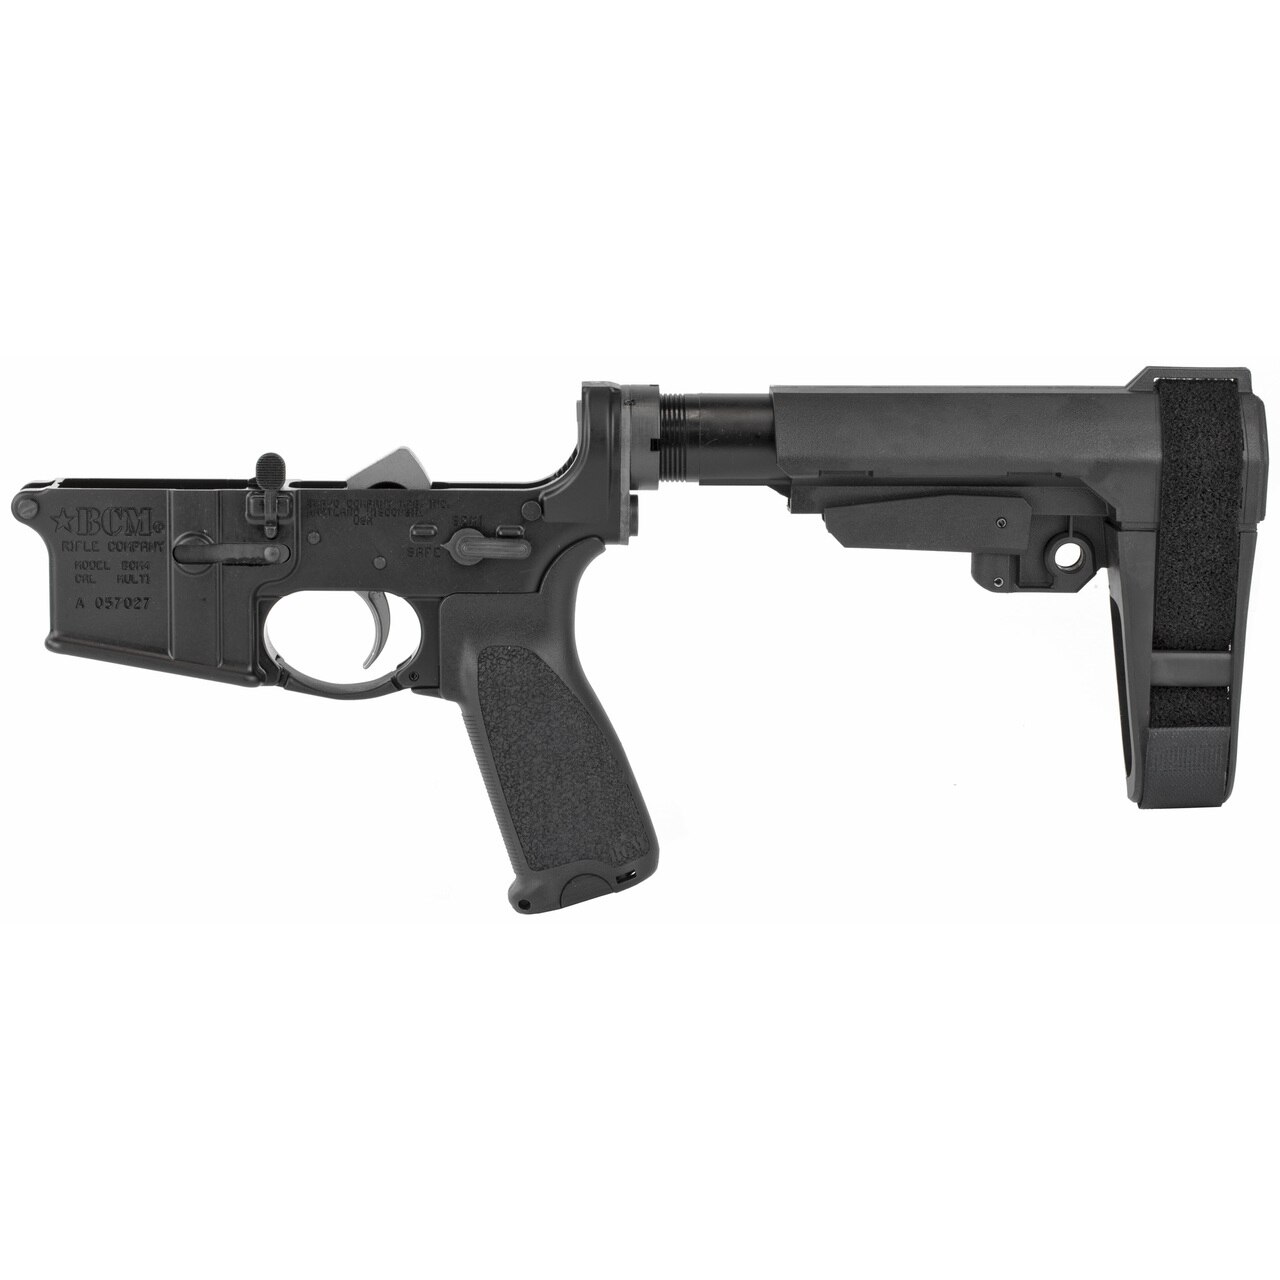 Image of Bravo Company, BCM, Pistol Lower Group with SBA3 Pistol Brace, Multi Cal, Aluminum Frame, 556NATO, Black Finish, GUNFIGHTER Pistol Grip,